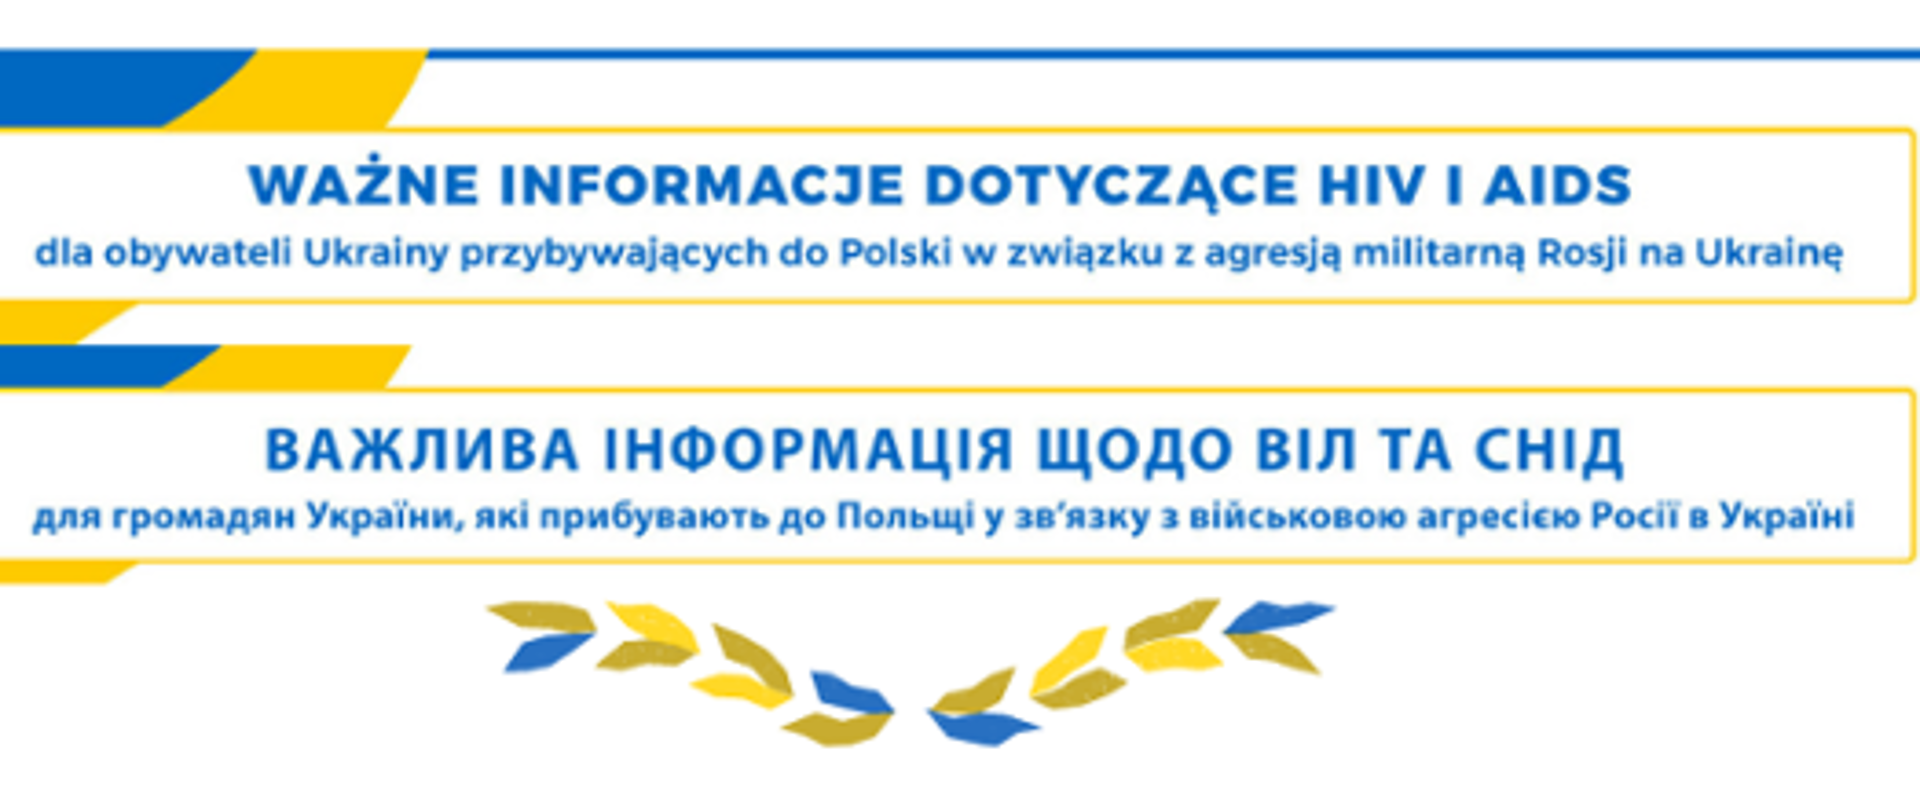 W żółtej ramce niebieski napis po polsku i ukraińsku Ważne informacje dotyczące hiv i aids